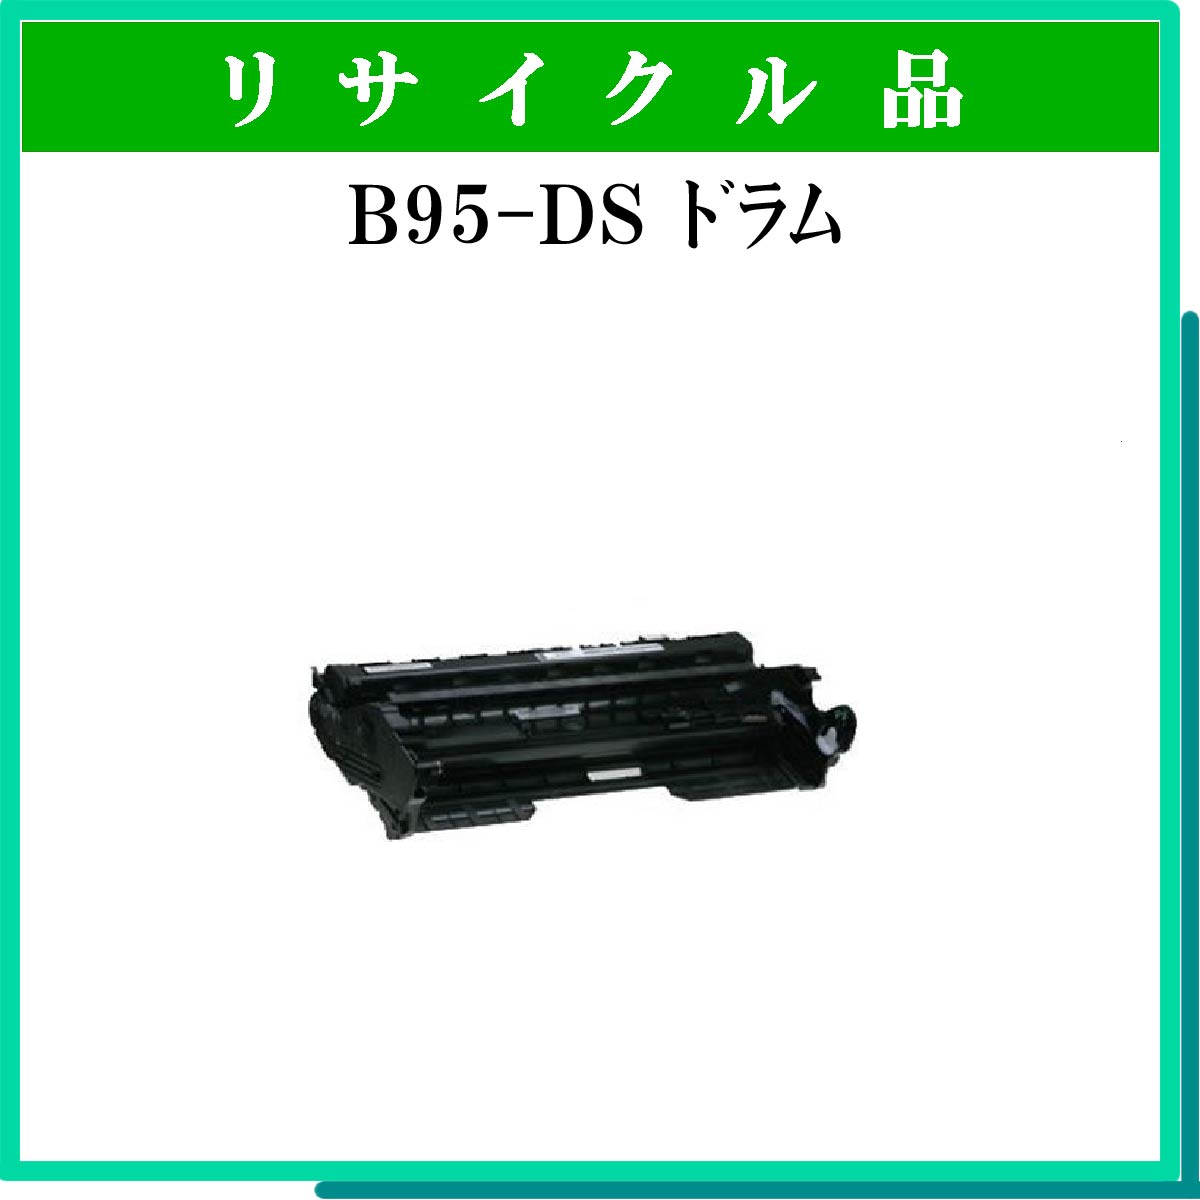 B95-DS